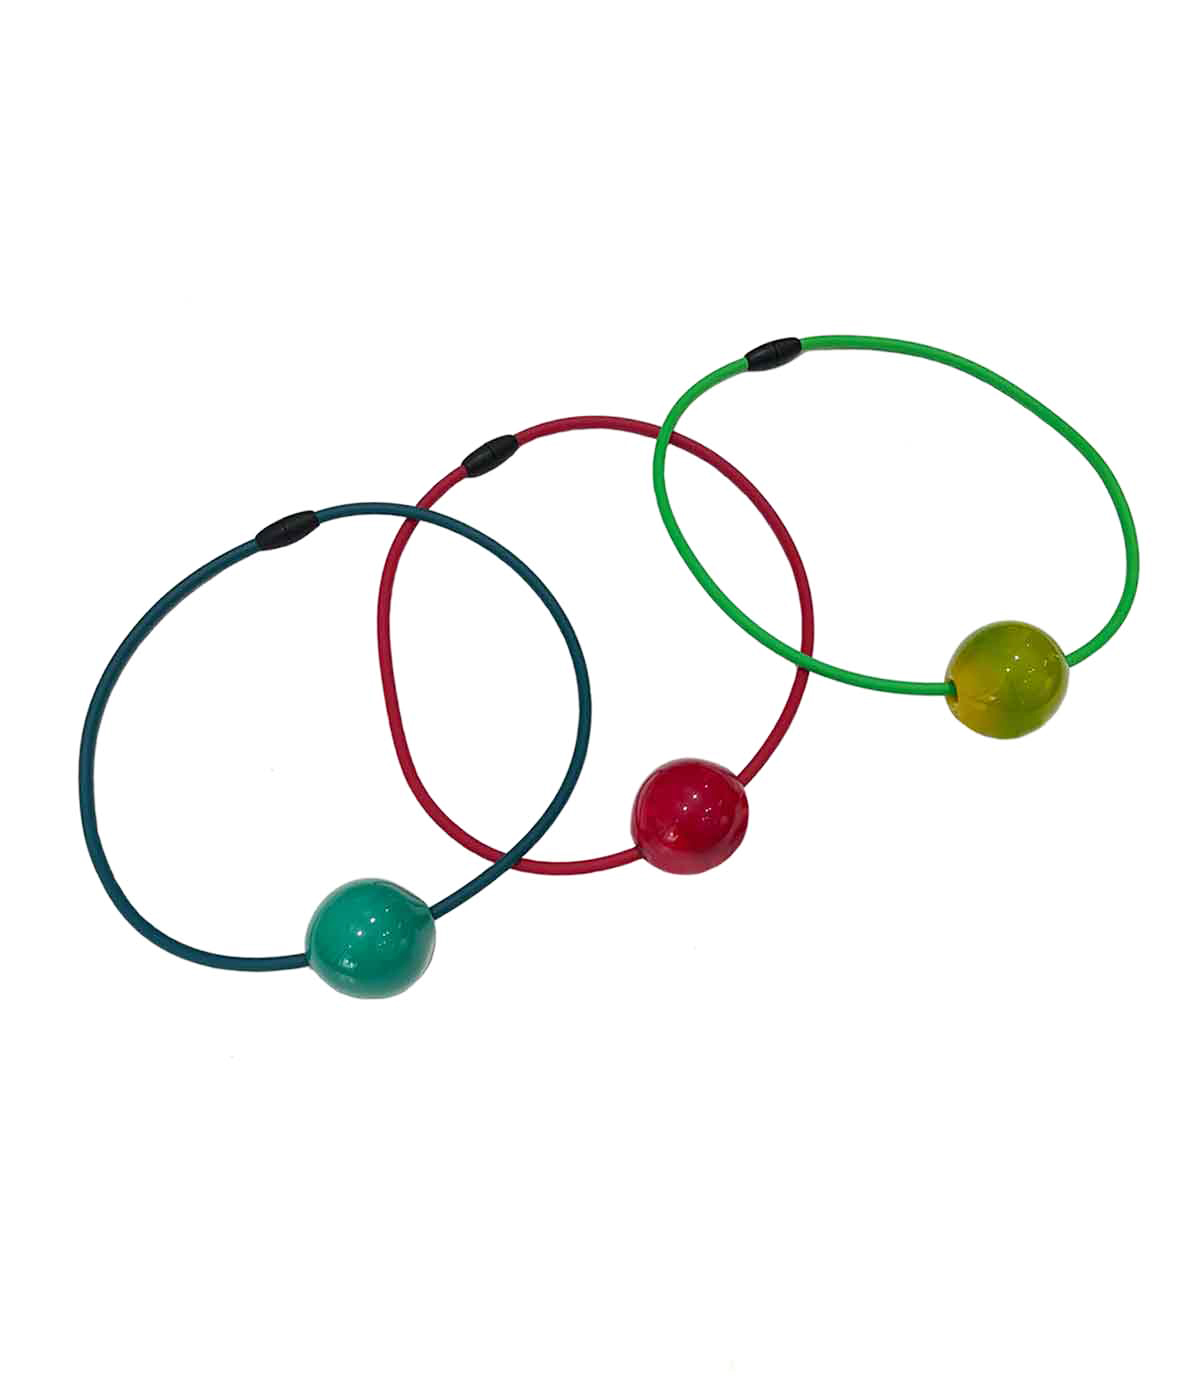 Aventurine, bijoux de créateur, bijoux originaux, bijoux colorés, collier Bubble vert émeraude, rouge et vert de Samuel Coraux